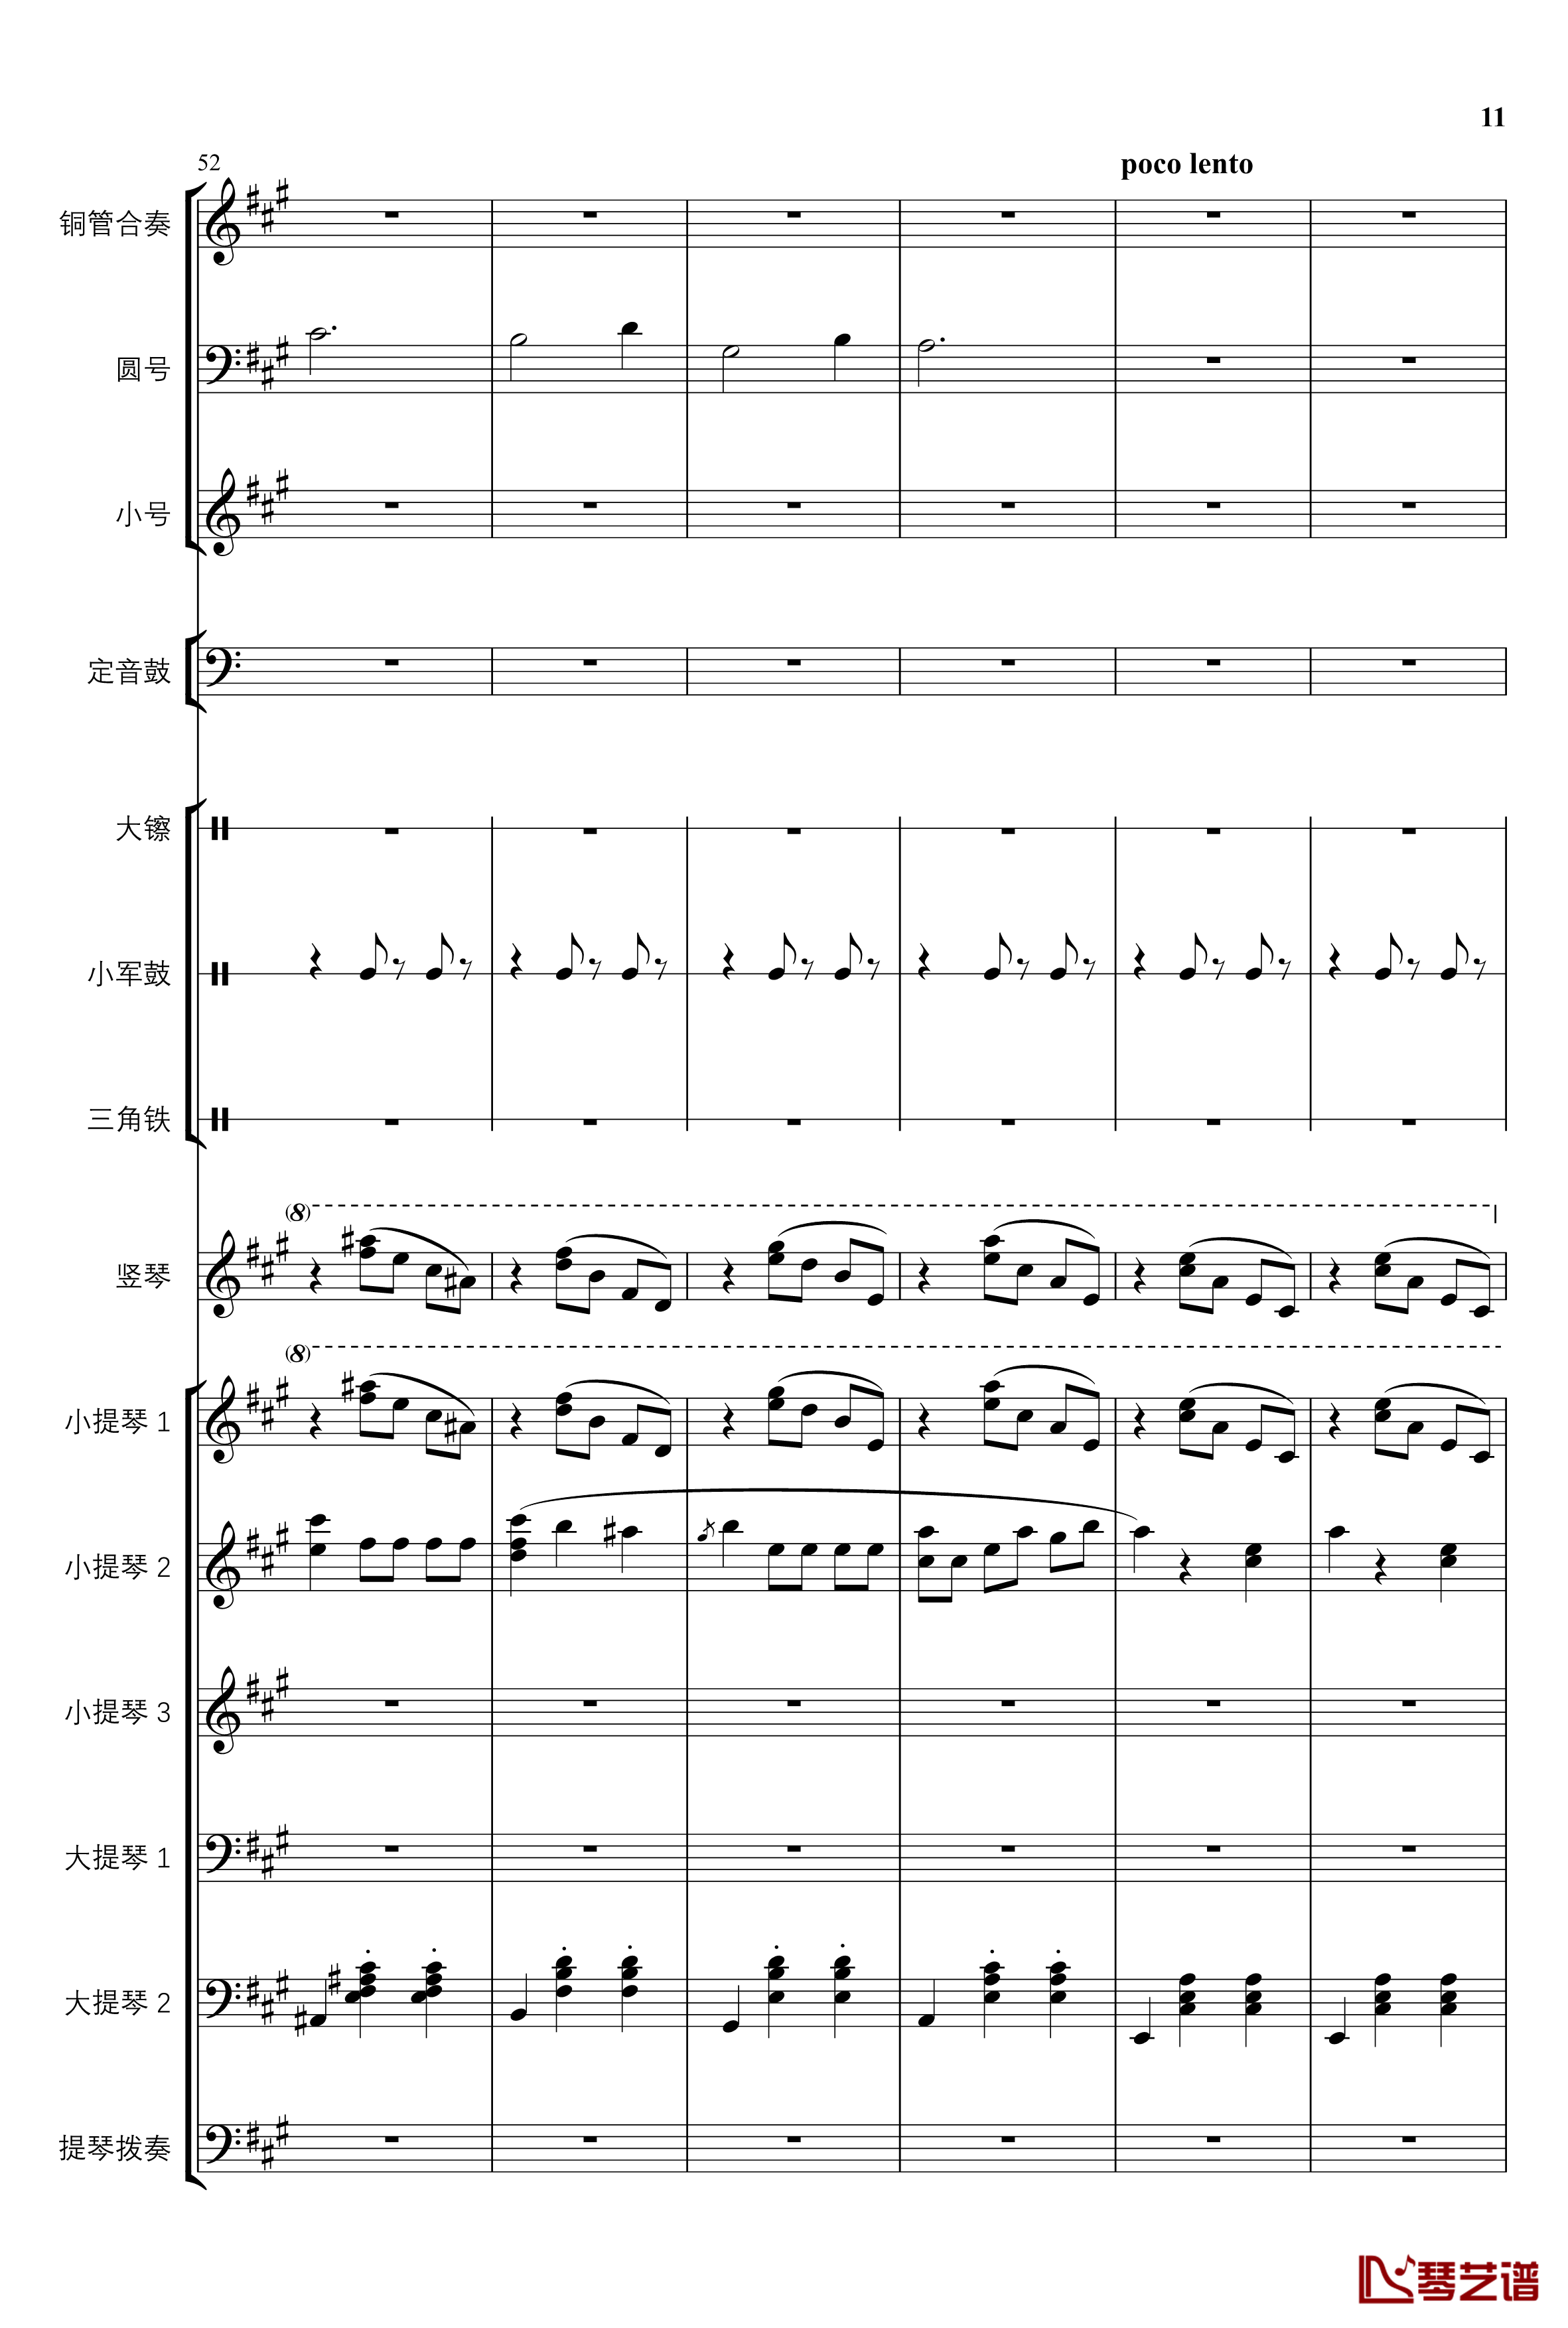 2013考试周的叙事曲钢琴谱-管弦乐重编曲版-江畔新绿11